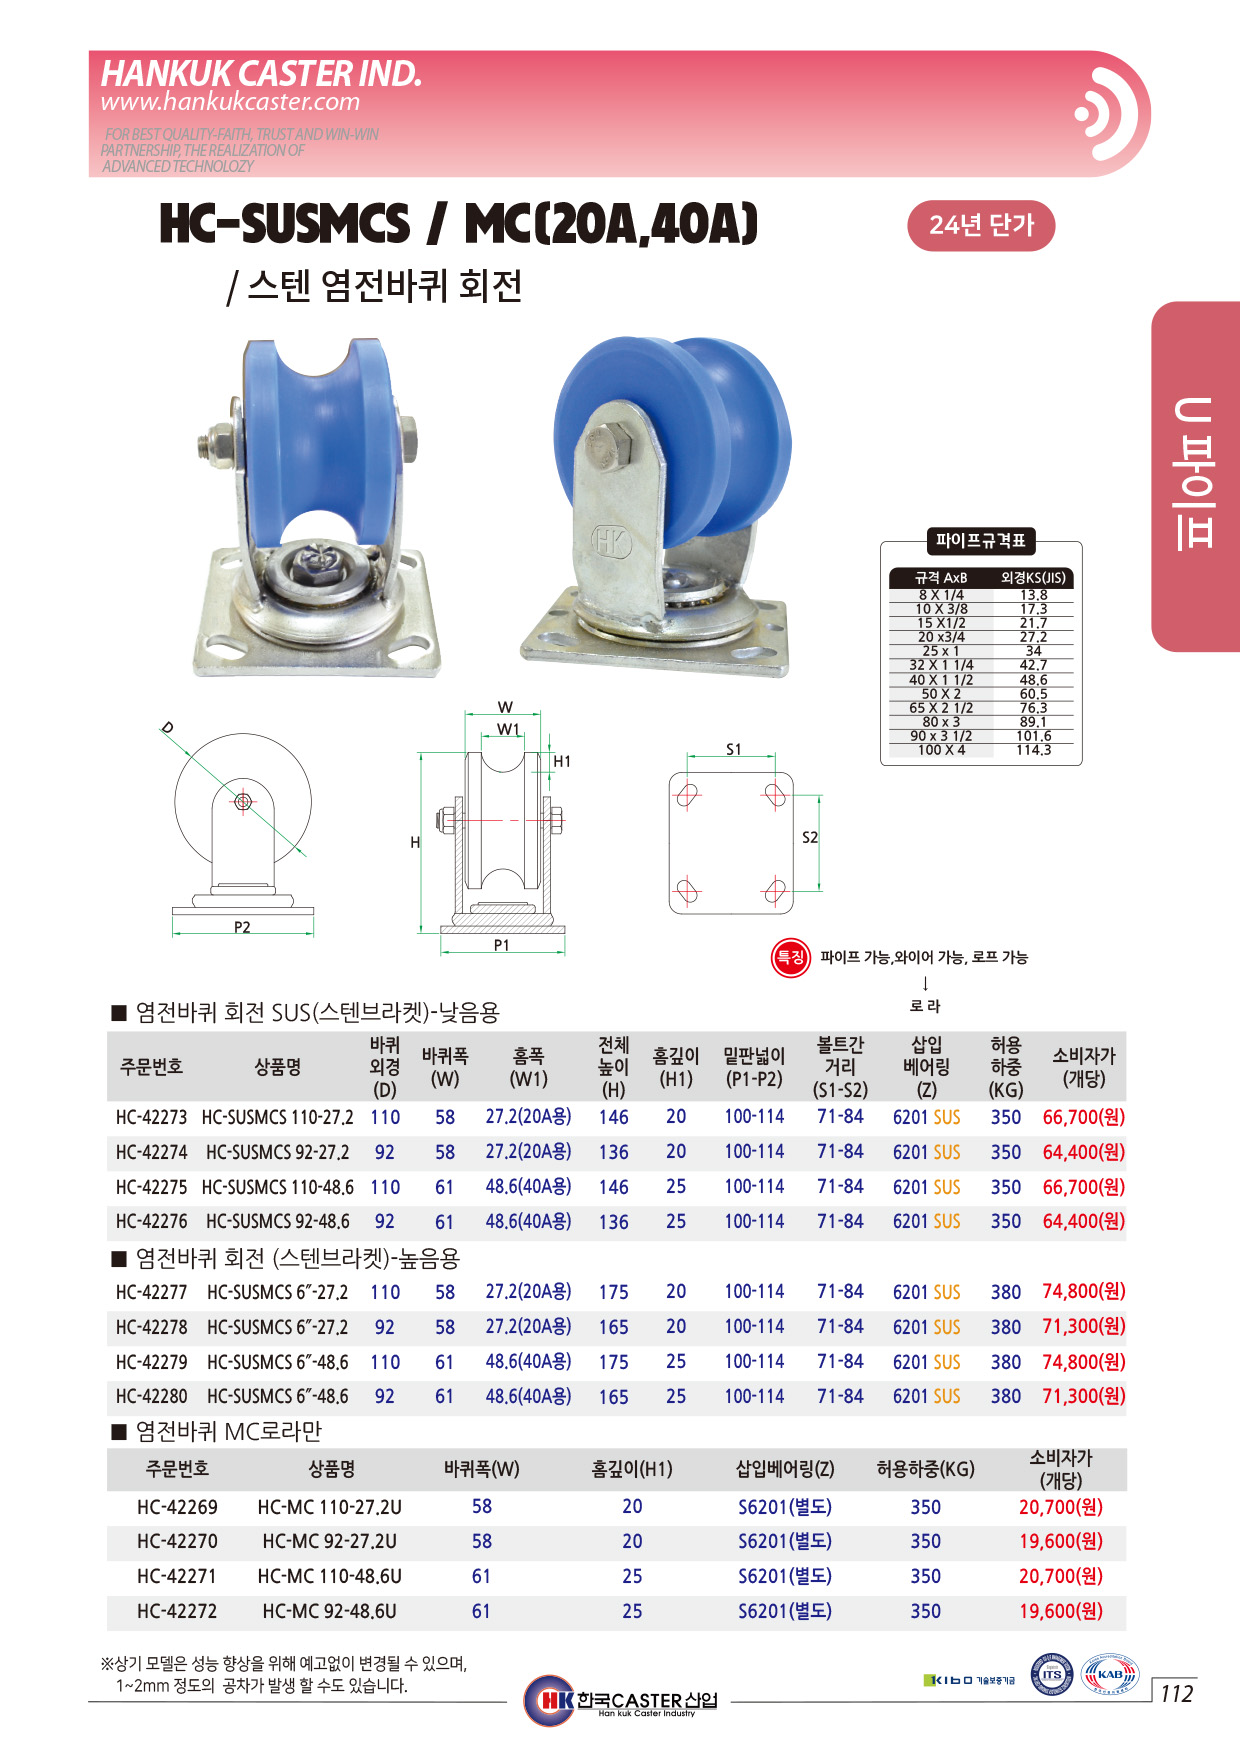 한국캐스터산업 HC-MCR 6인치 32A용 염전바퀴 고정 철브라켓 높음용 SUS베어링 있음 HC-42285